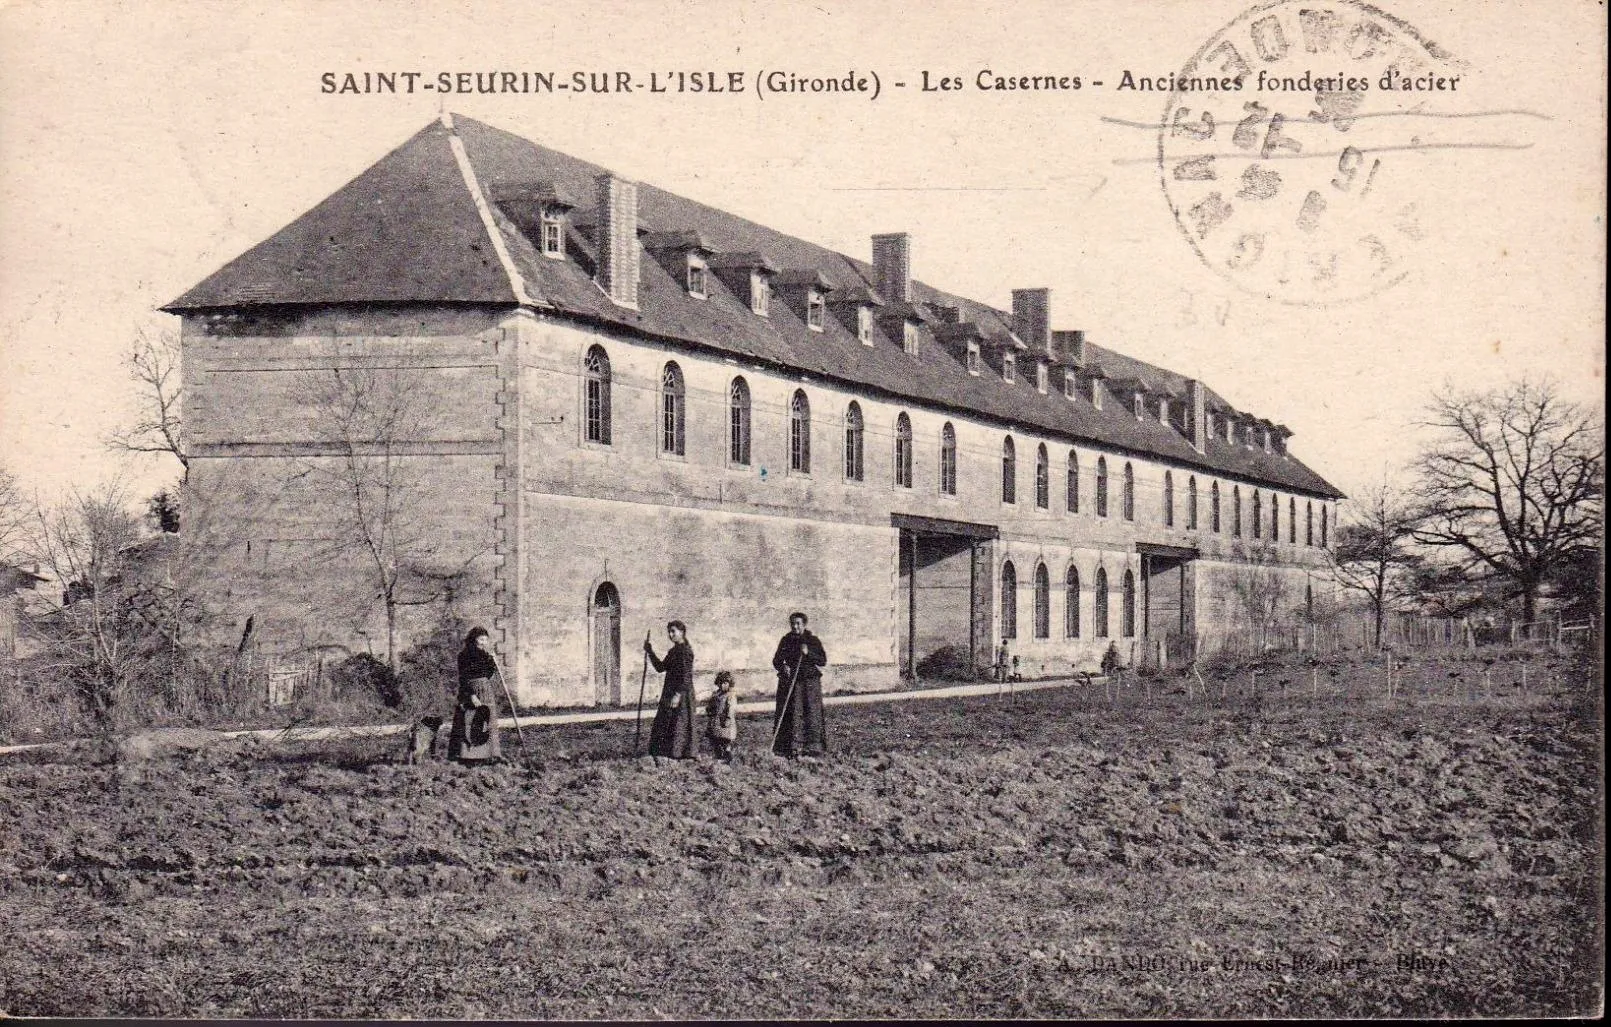 Photo showing: Saint-Seurin-sur-l'Isle - Les Casernes